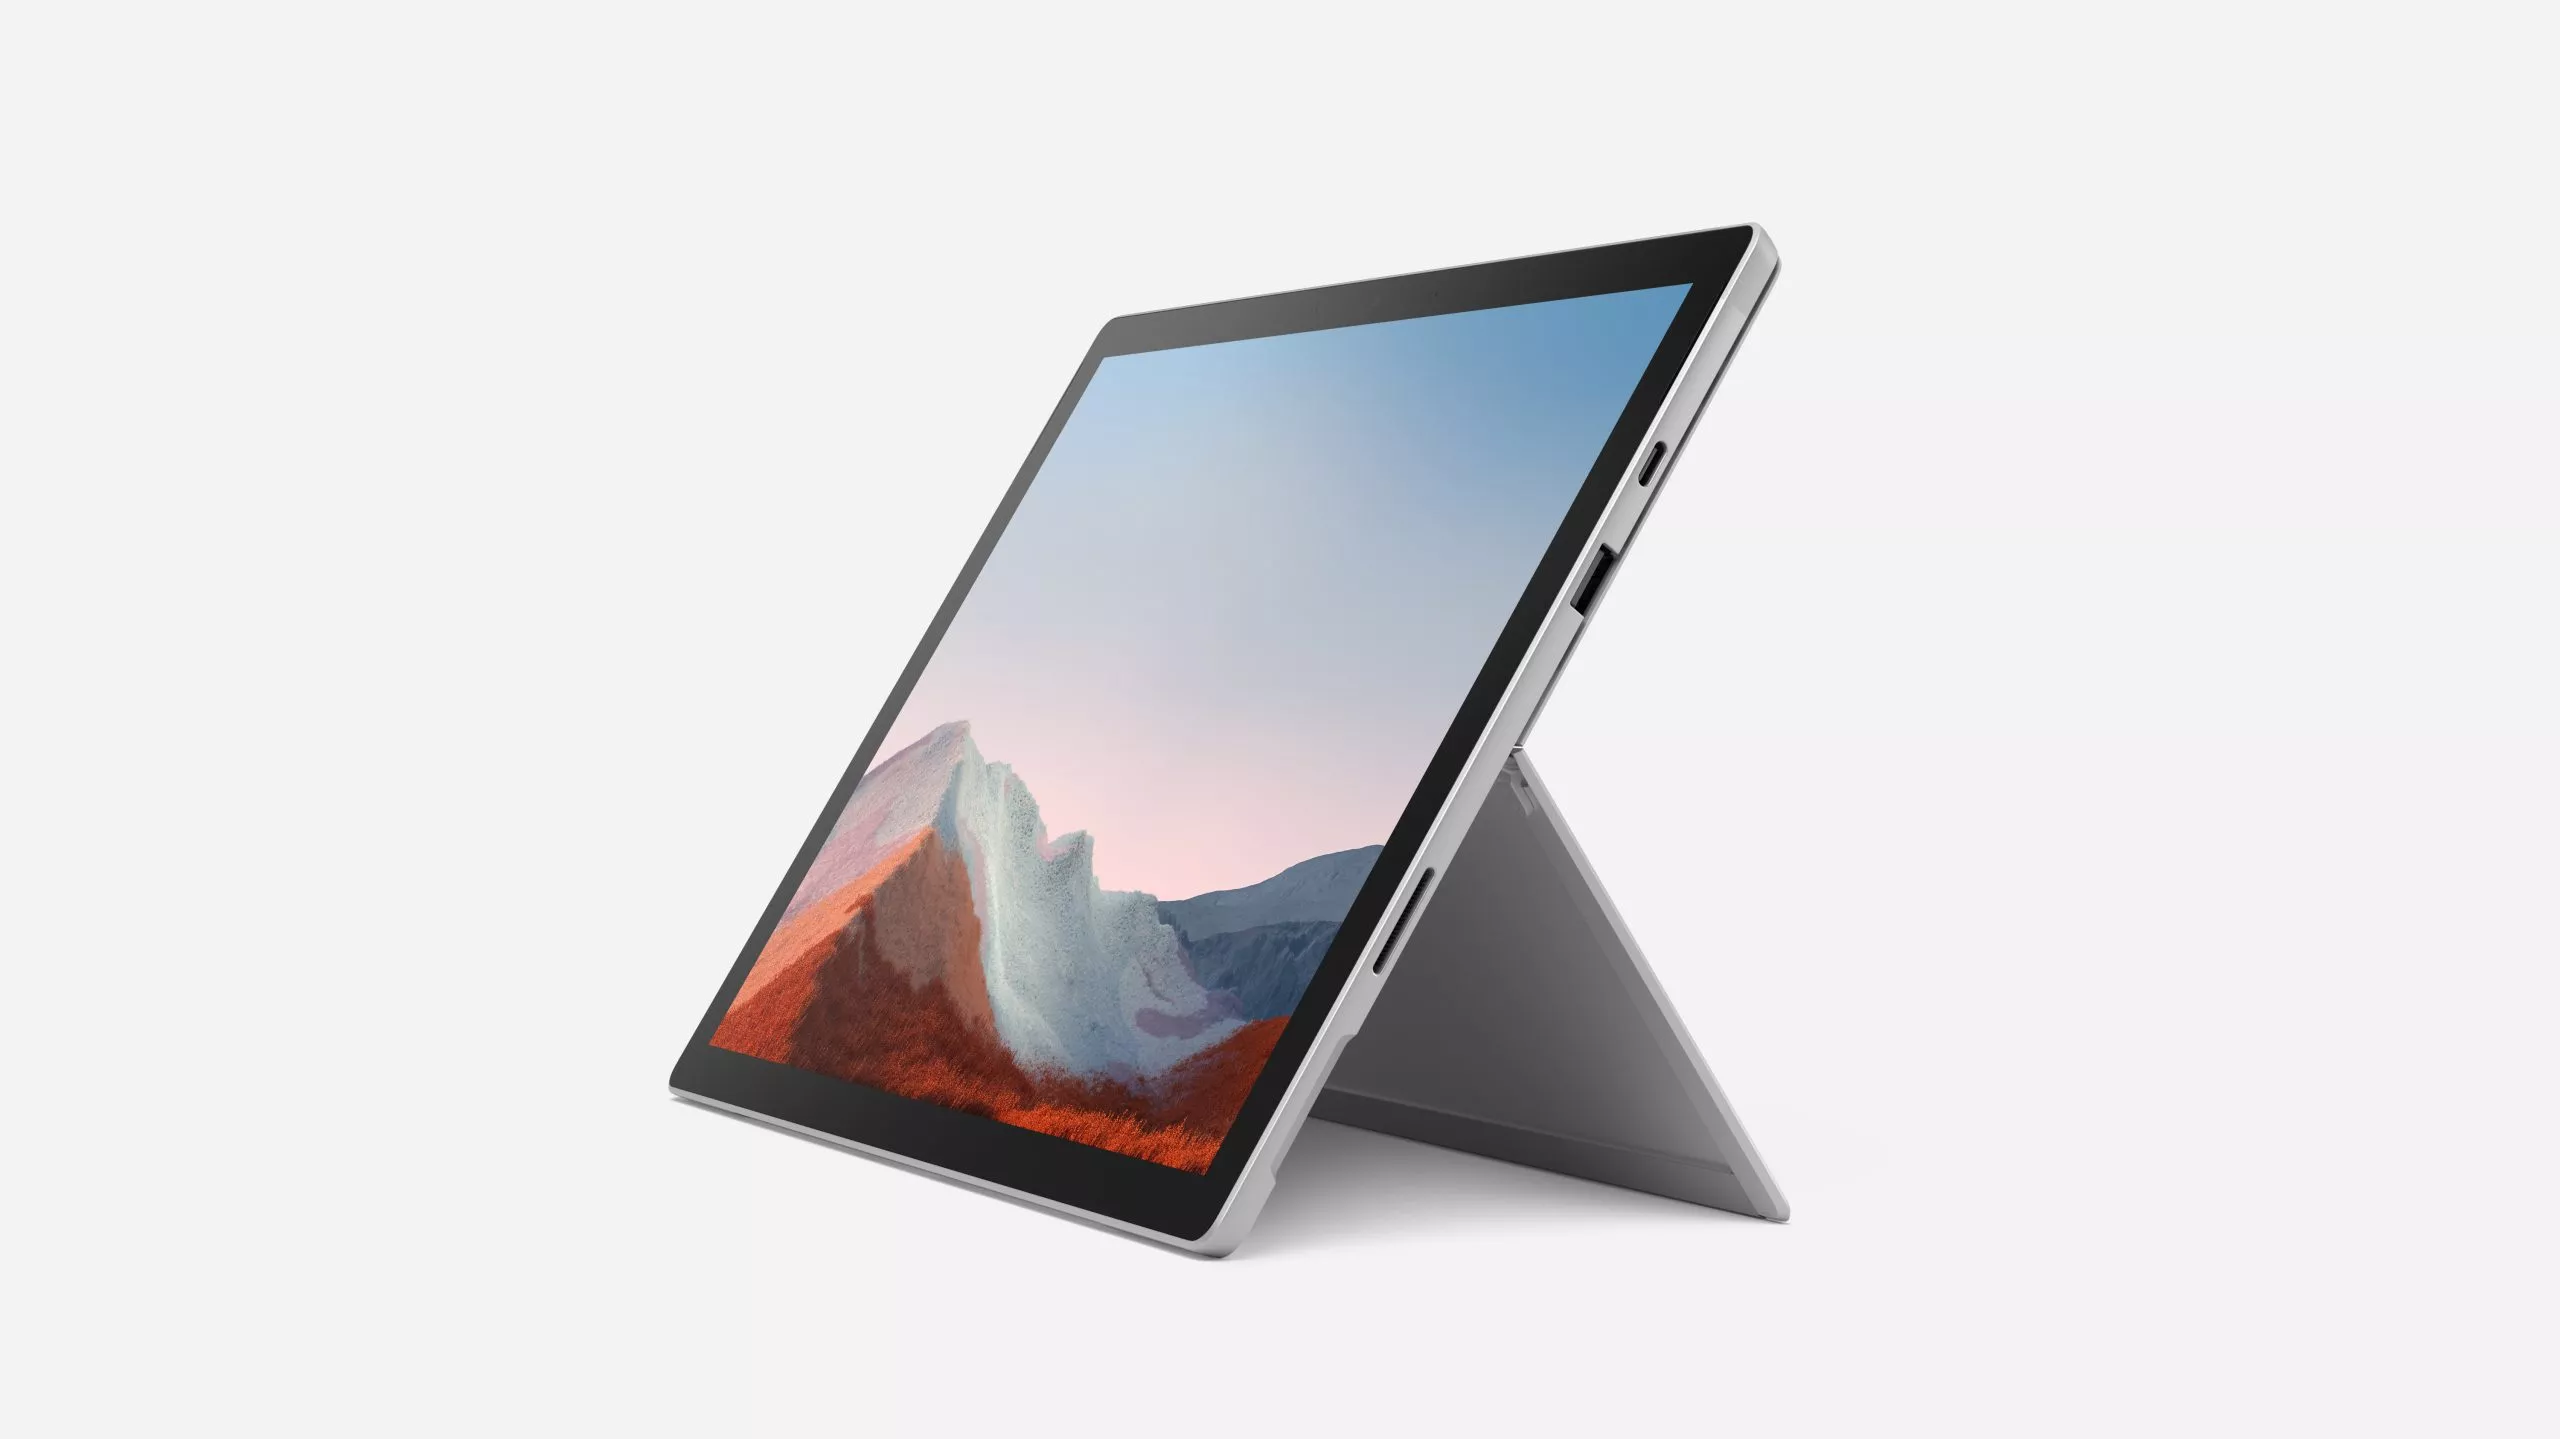 Vente MS Surface Pro 7+ Intel Core i7-1165G7 12.3p Microsoft au meilleur prix - visuel 2